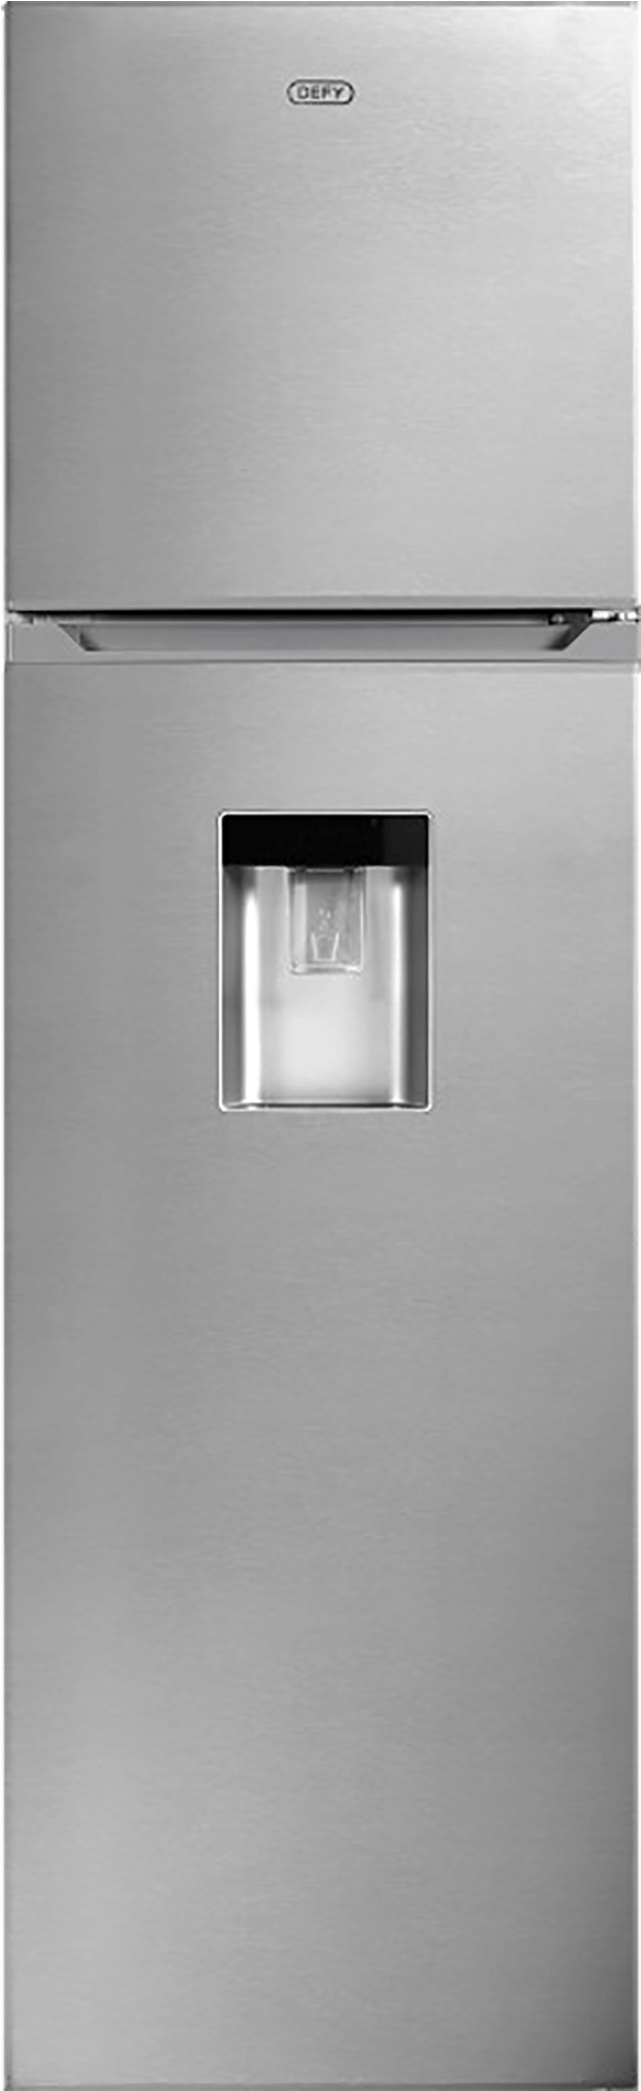 Double Door Fridge Model - Refrigerator (1162x2362), Png Download